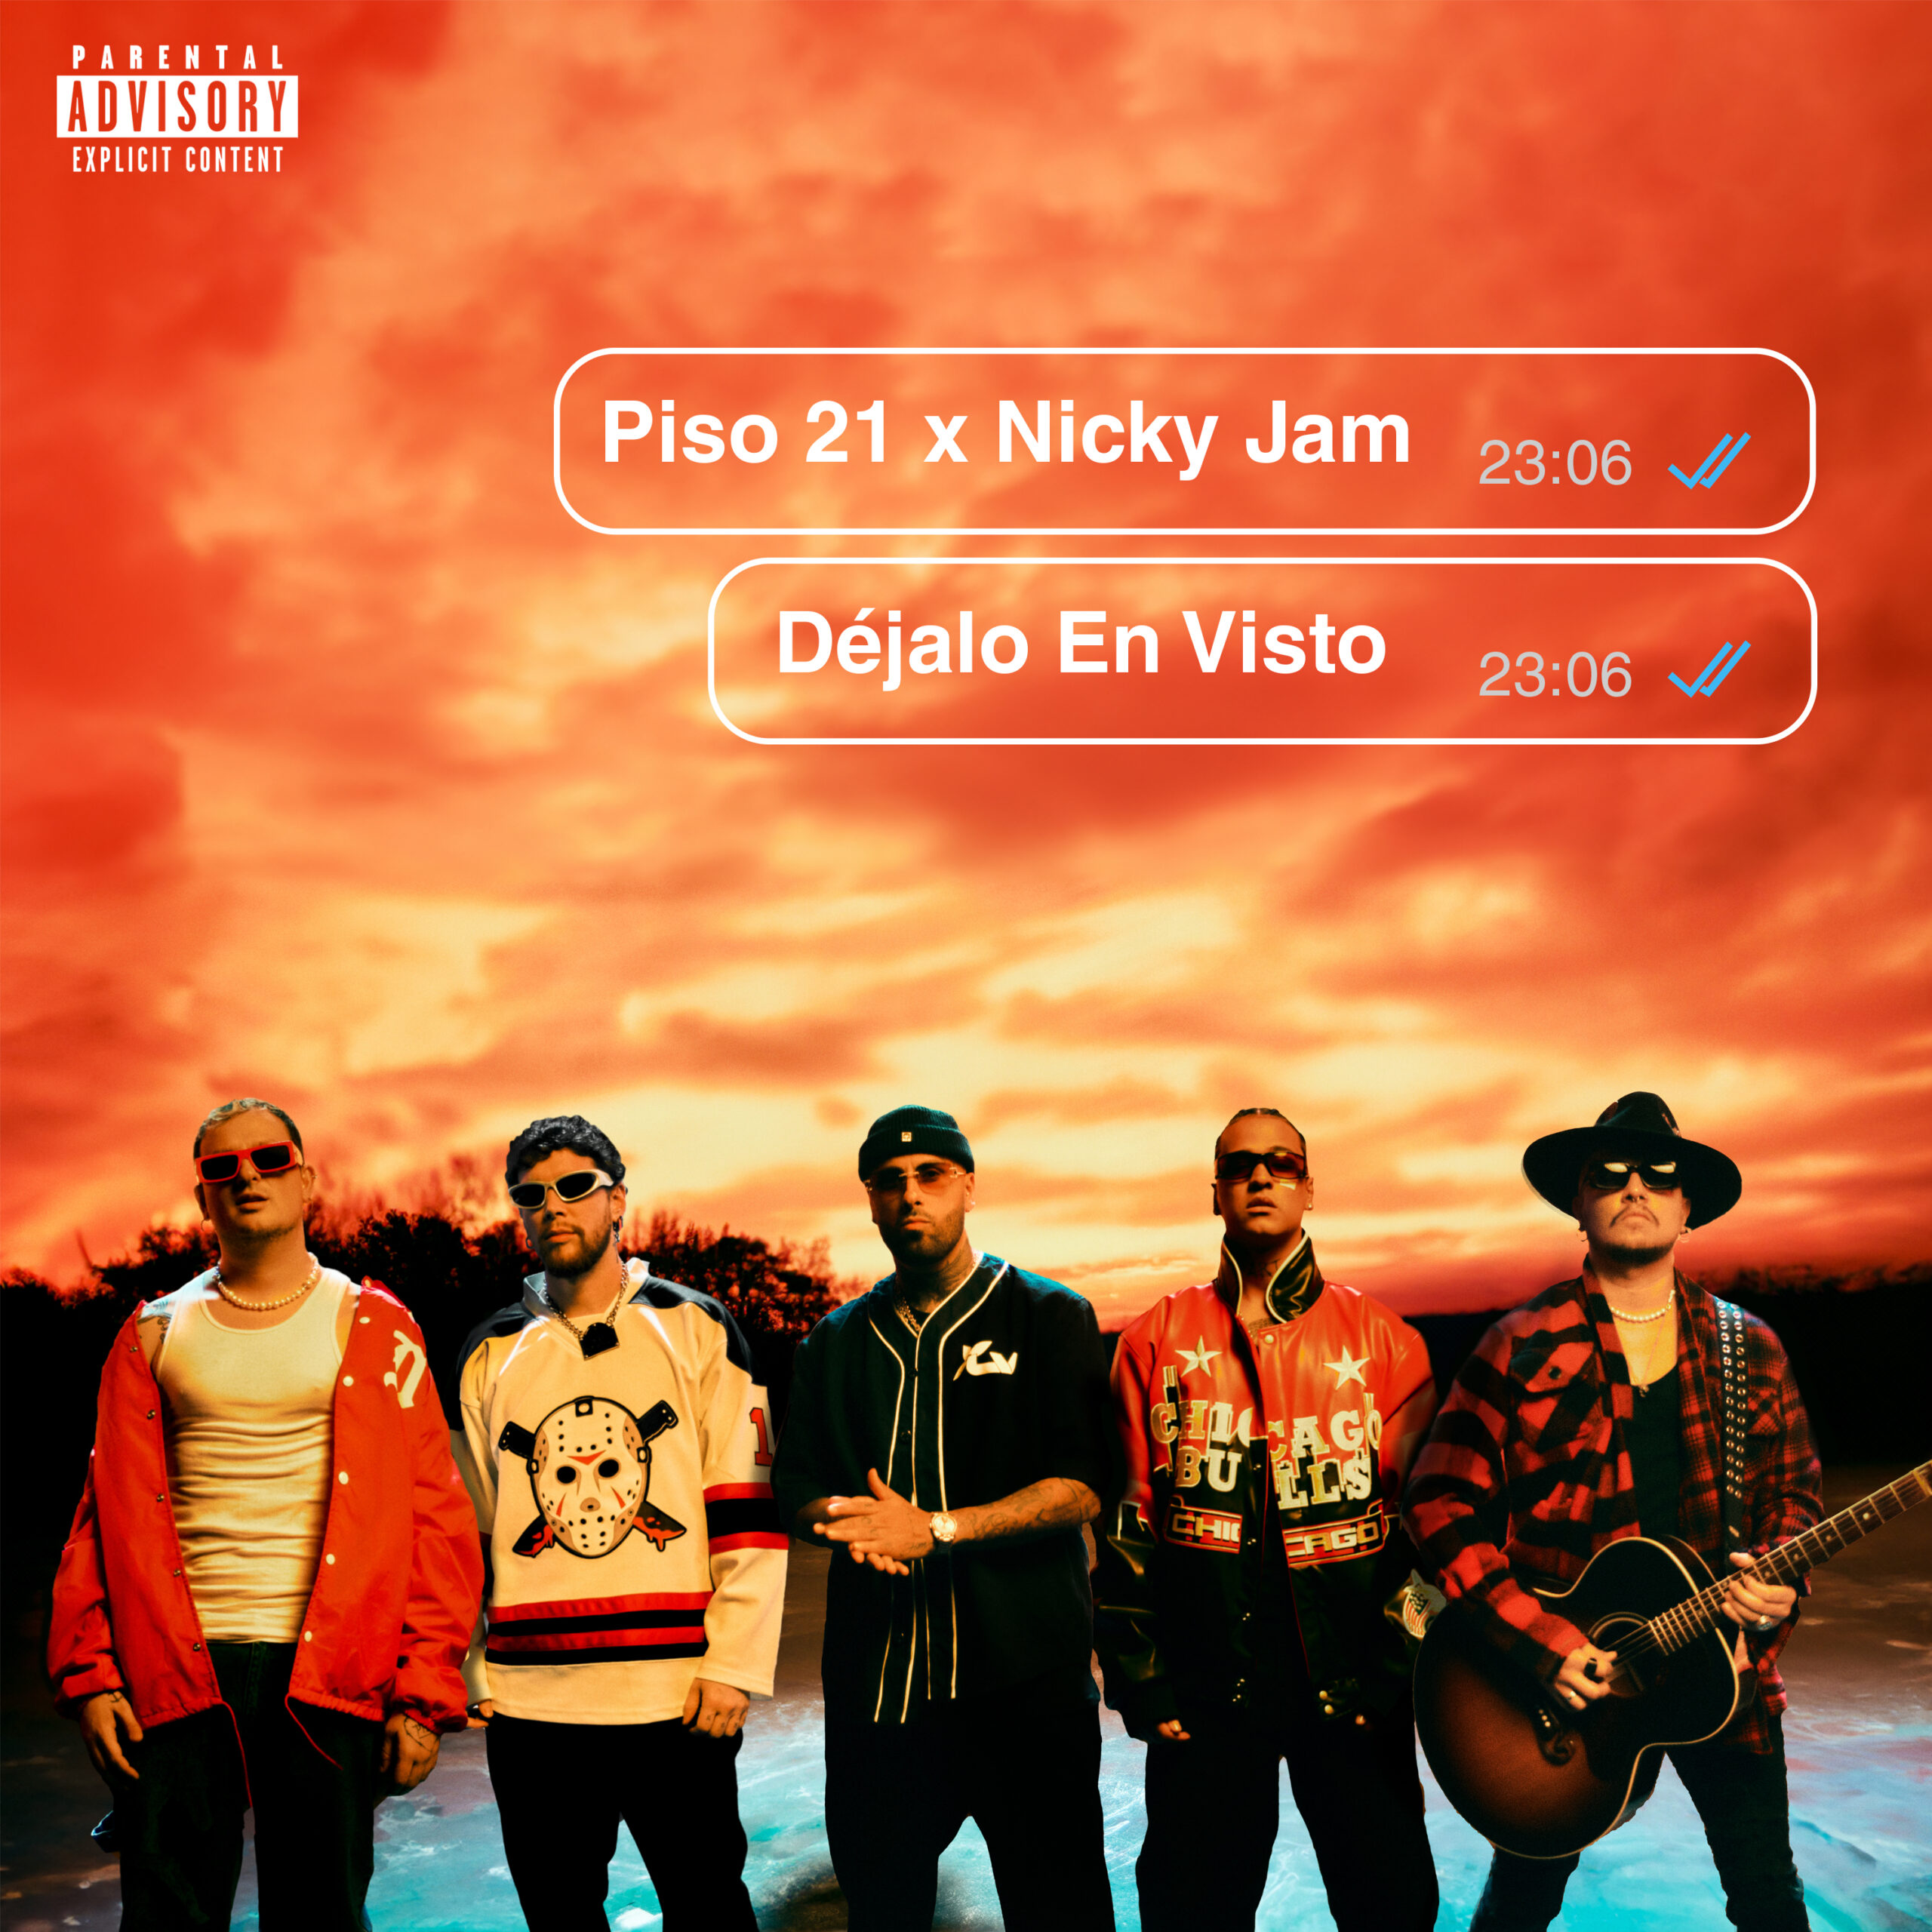 PISO 21 se unen a Nicky Jam en tema “Déjalo En Visto”